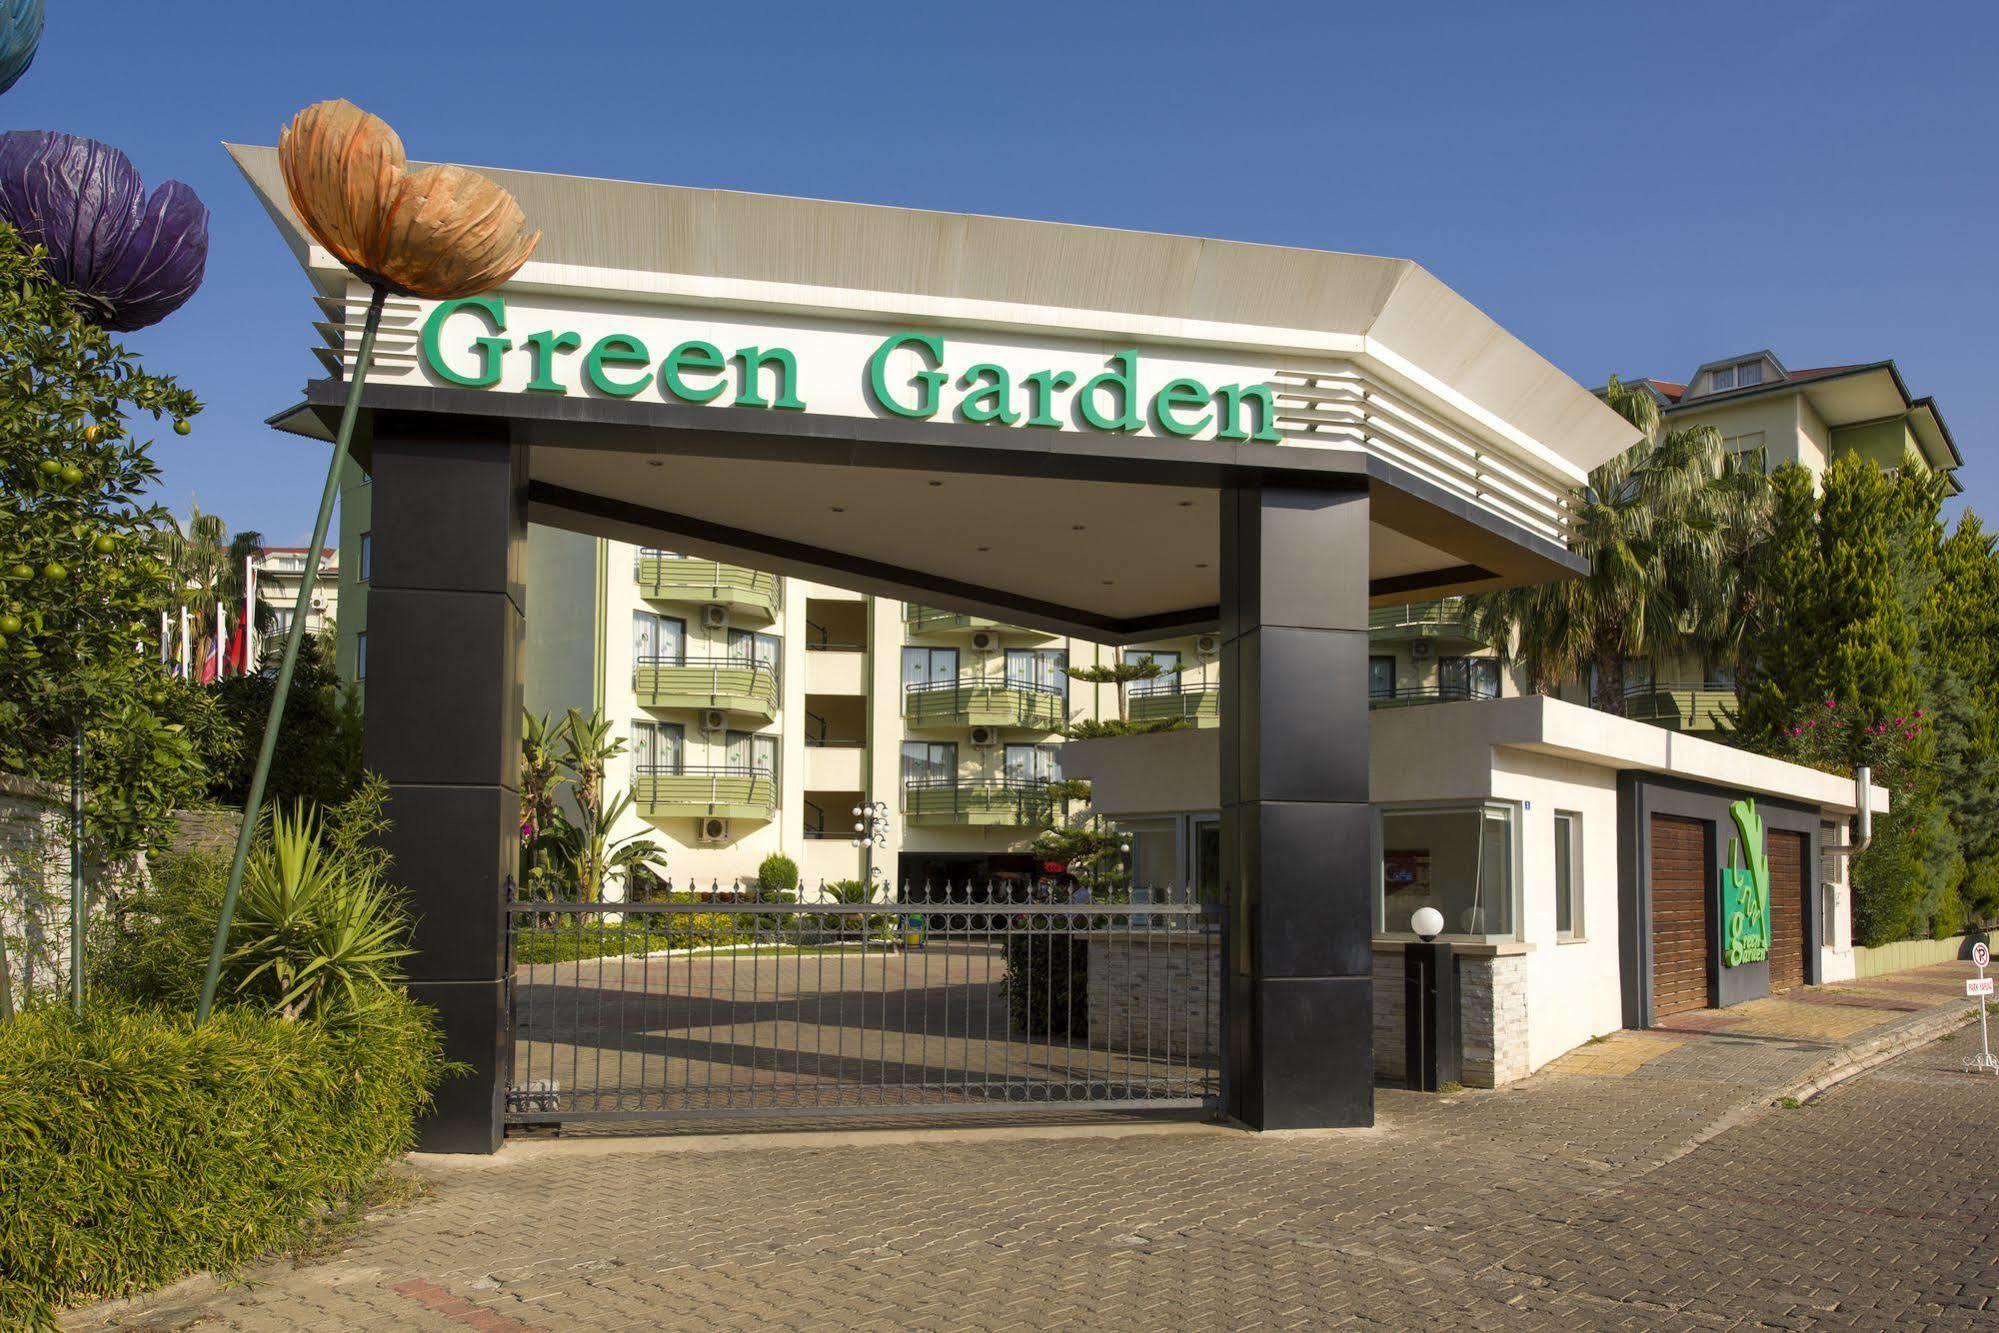 Отель Green Garden Resort Hotel 4. Грин Гарден отель Кольчугино. Green Garden Resort Аланья. Грин Гарден Резорт отель 4 Турция Аланья. Турция аланья грин